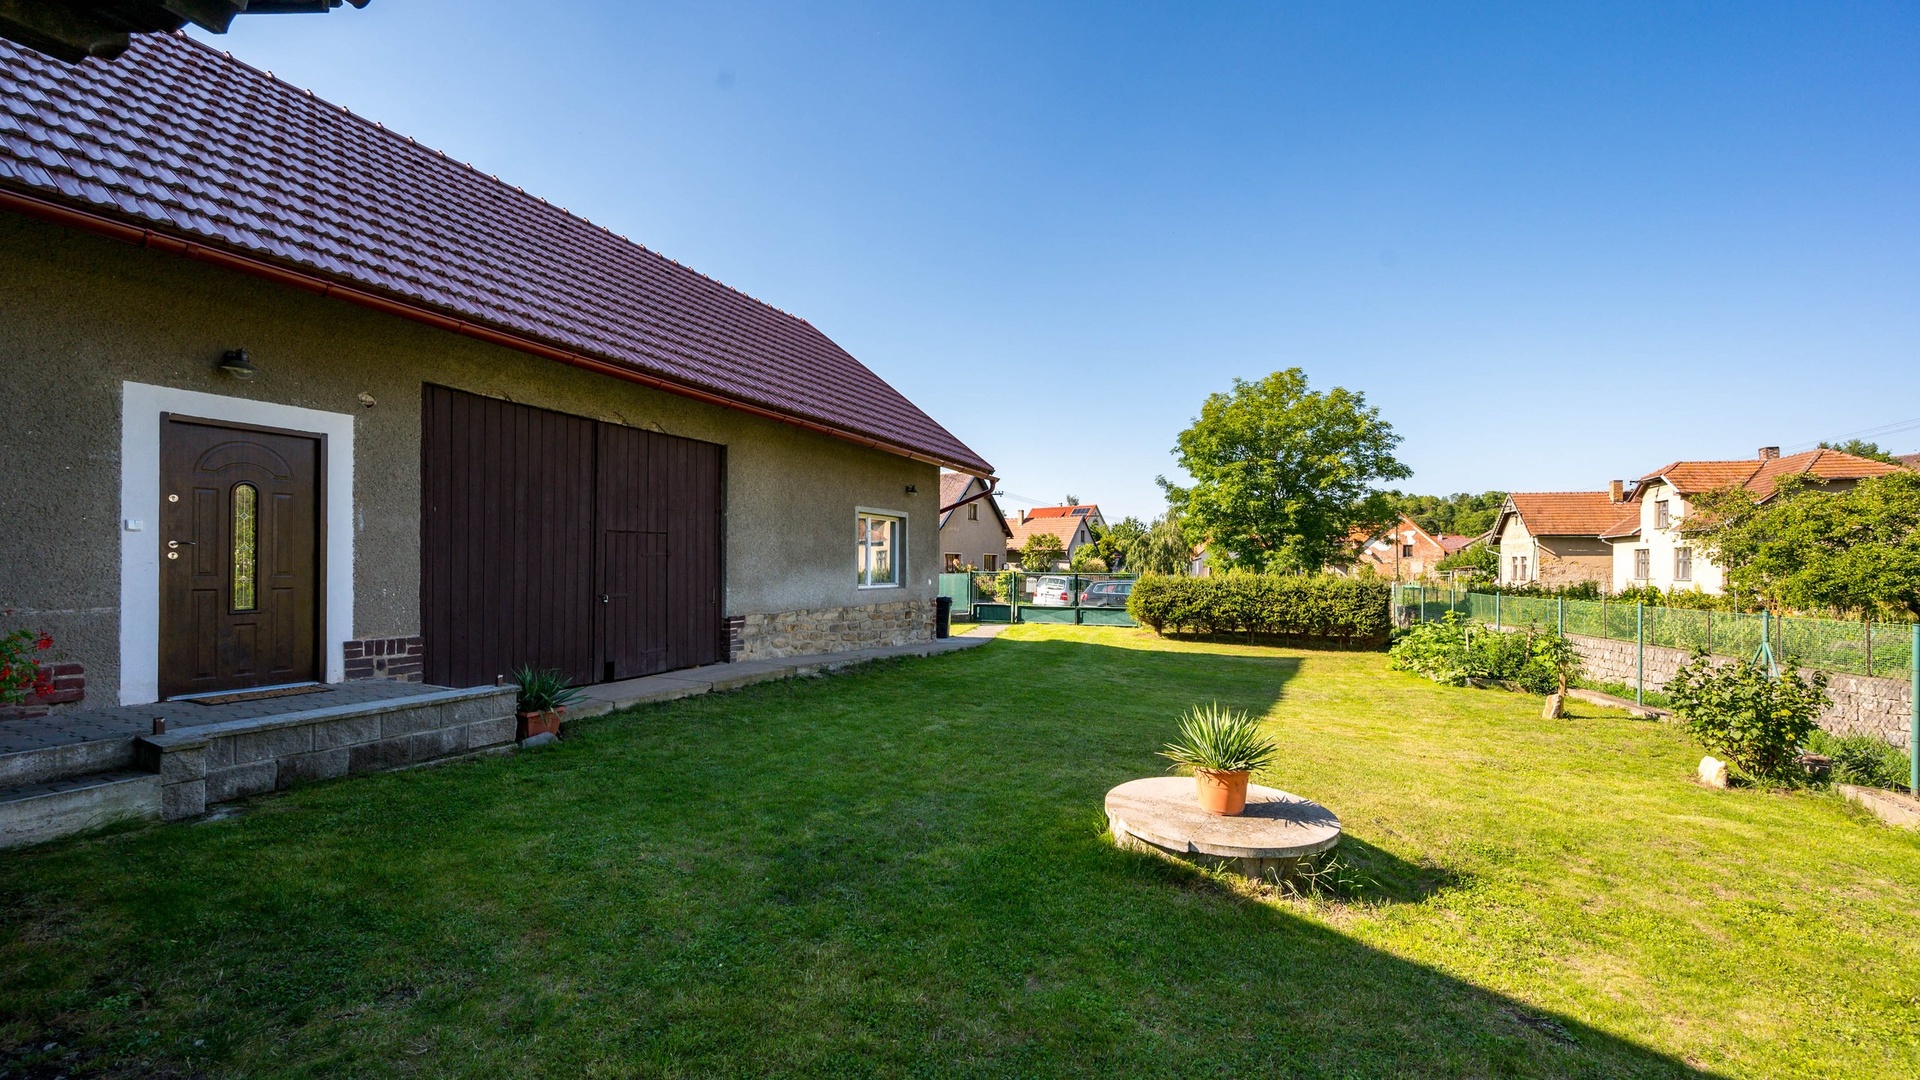 Prodej krásného rodinného domu, 120 m² podlahové plochy, 523 m² pozemek a k tomu nádherná stodola - Vilémov